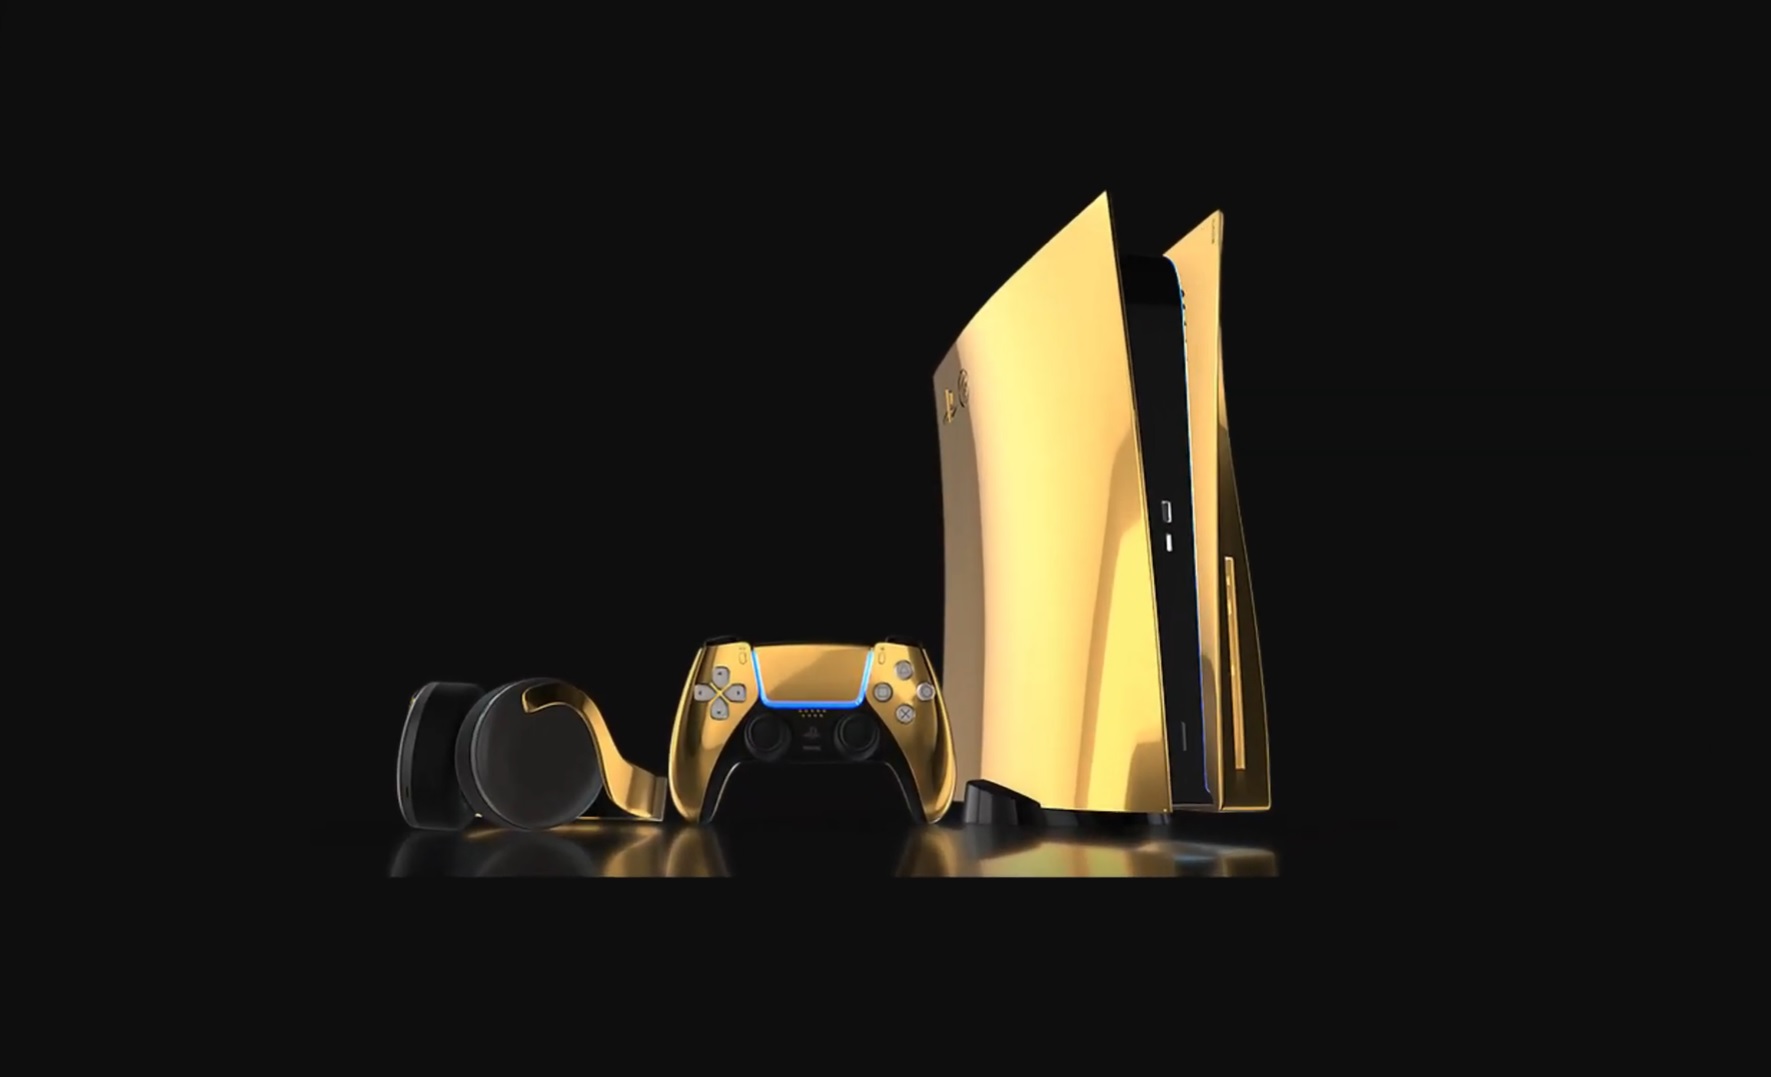 PS5 : les précommandes seront lancées le 10 septembre... pour la version en or massif